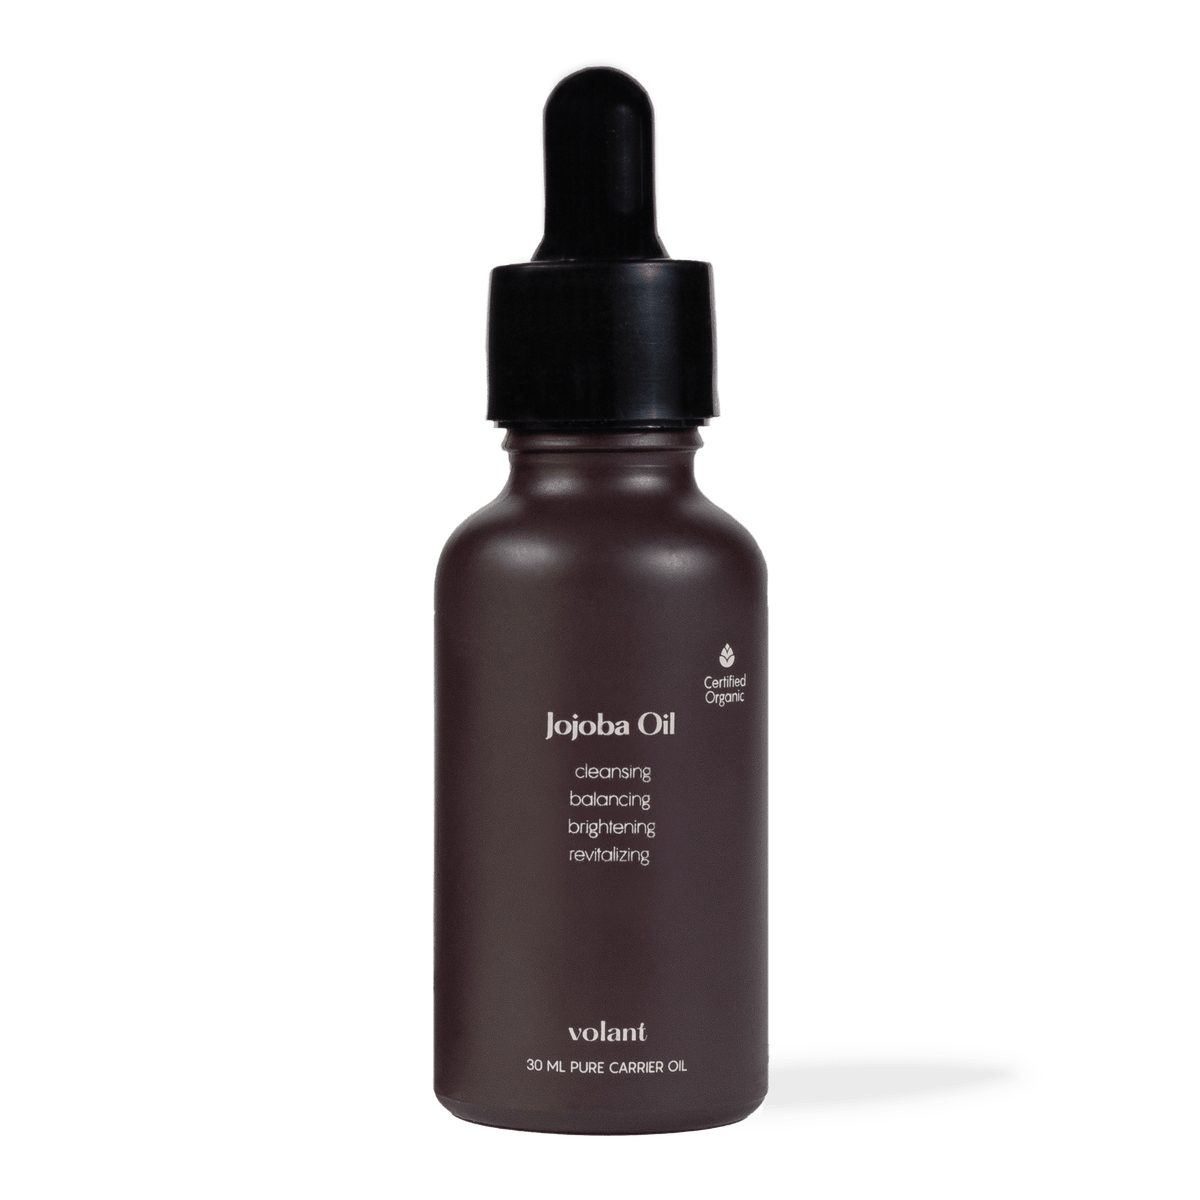 volant jojoba bæreolie flaske. de mest populære bæreolier til æteriske olier, fordi den kan bruges på dit hår eller din hud